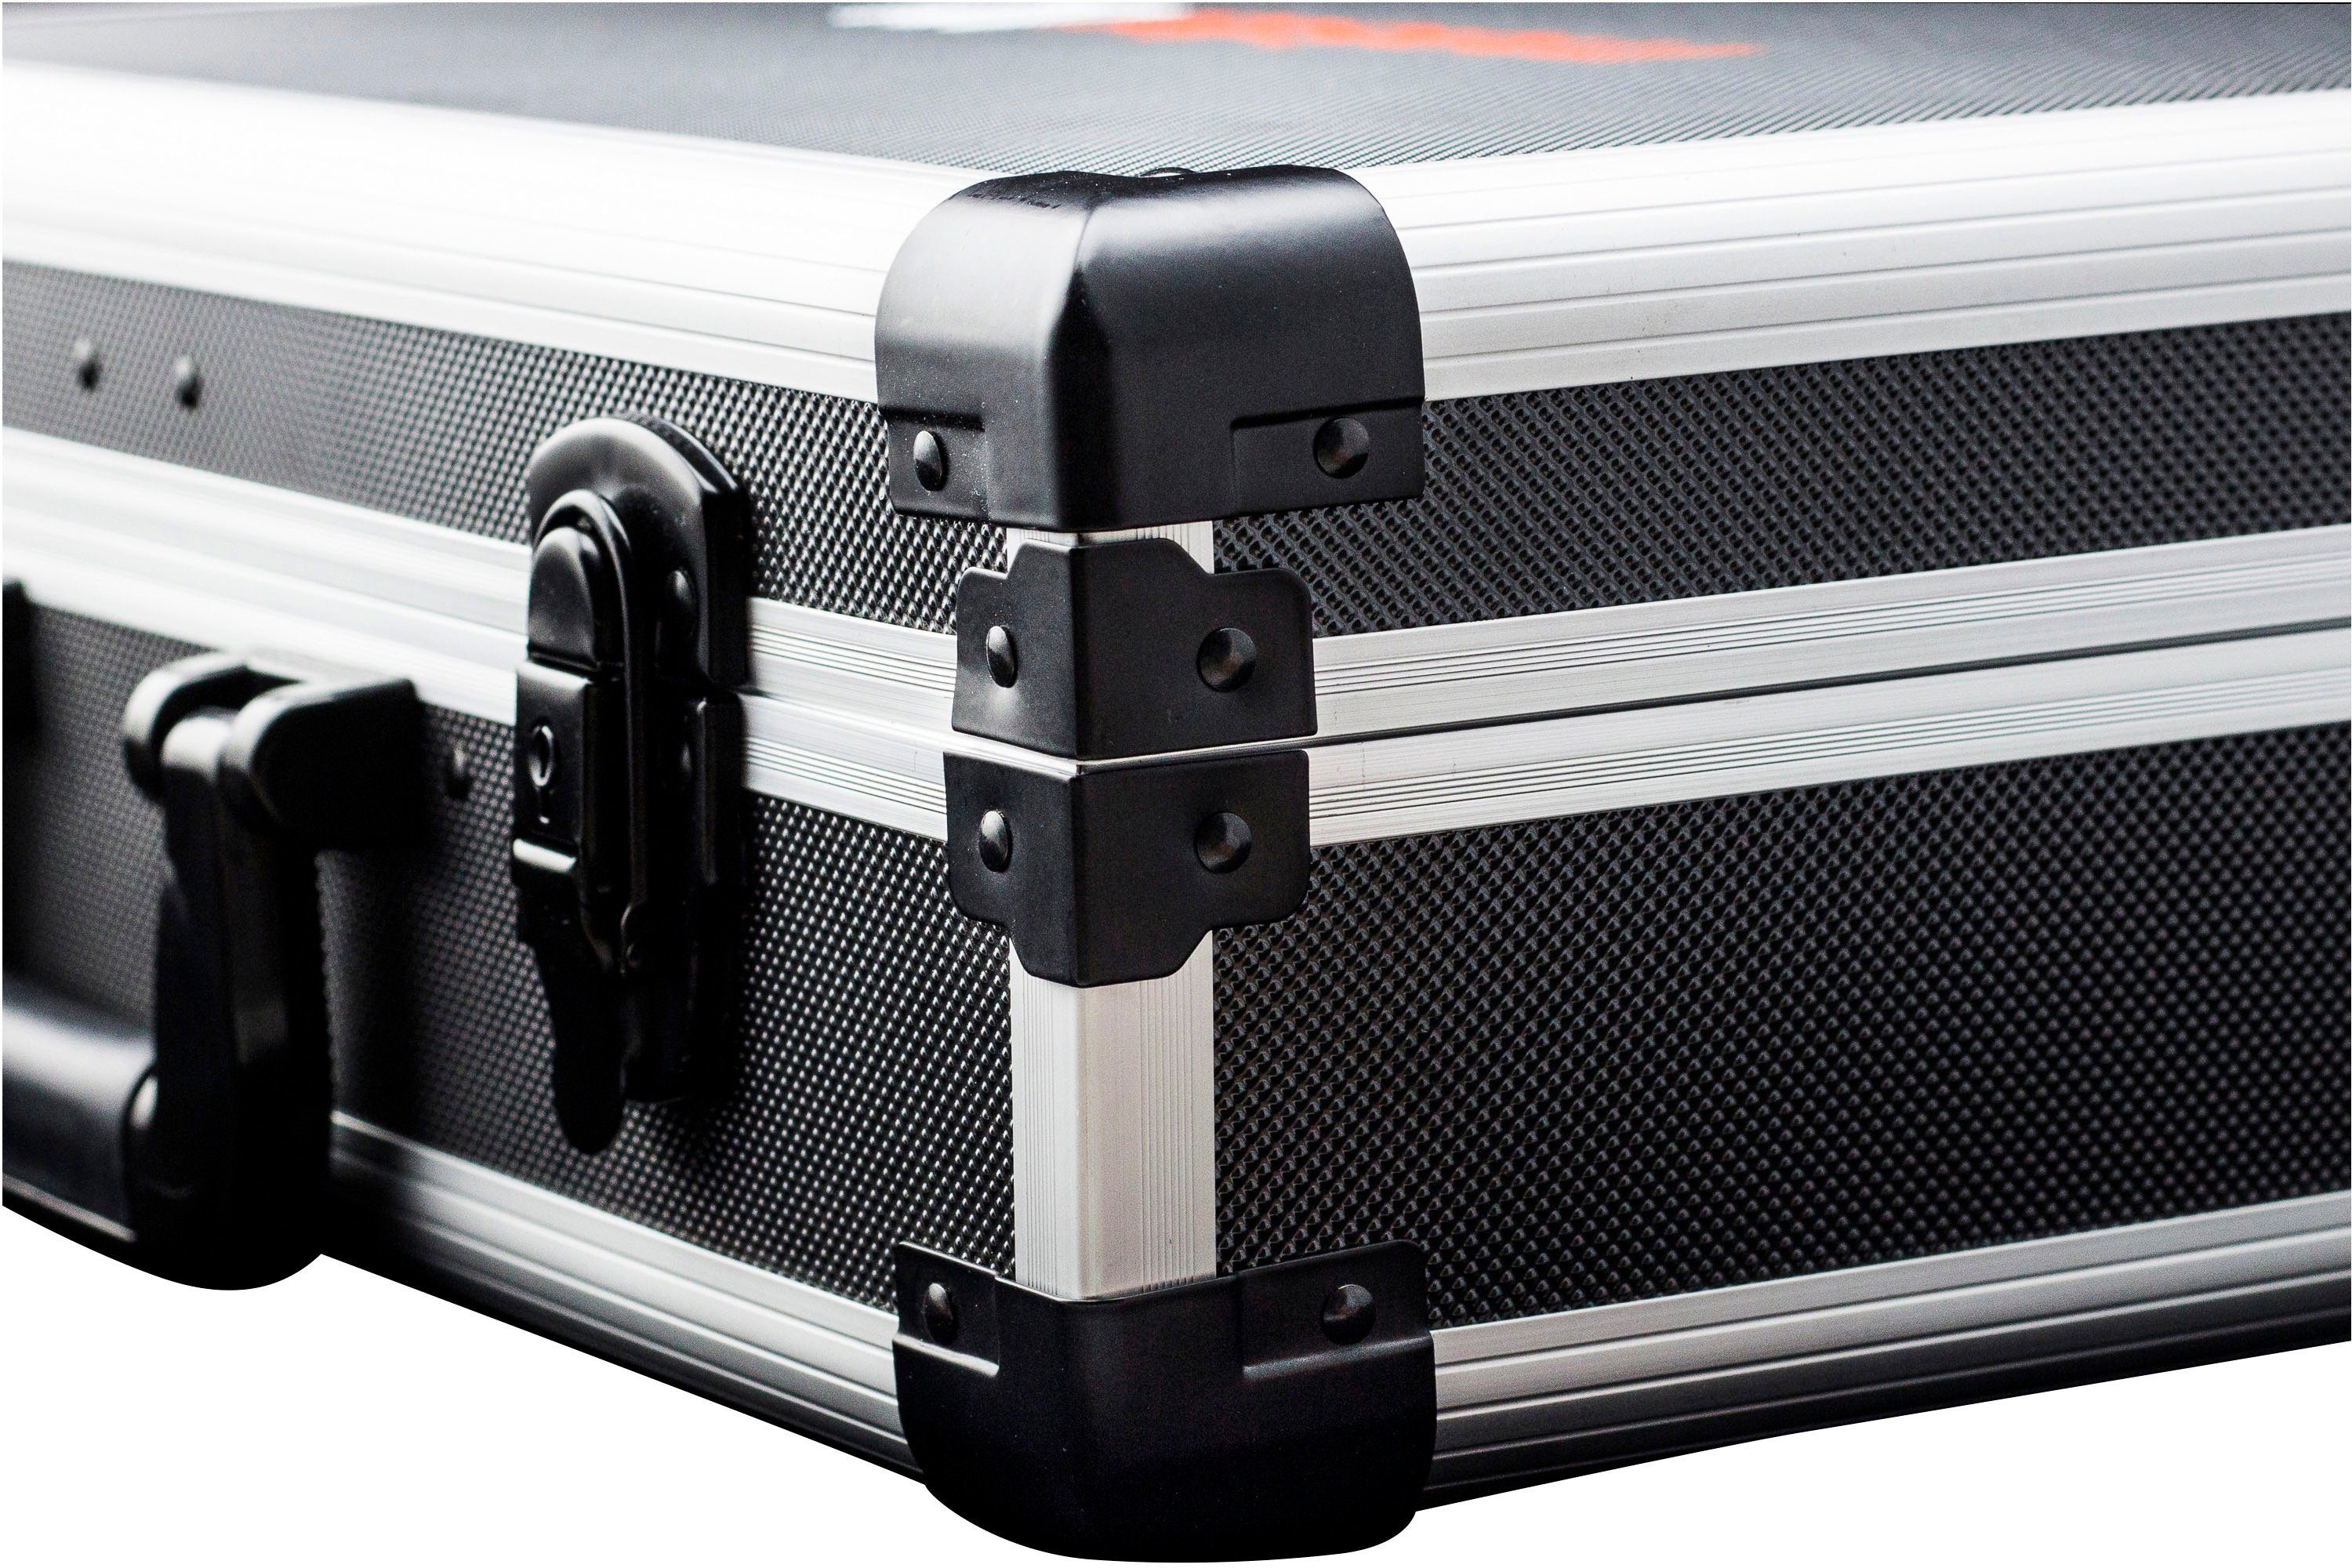 Alu-Koffer Werkzeugset Profi / mit Qualitätswerkzeug Wera, 8973750, Werkzeugkoffer & meister 131-teilig, von Knipex